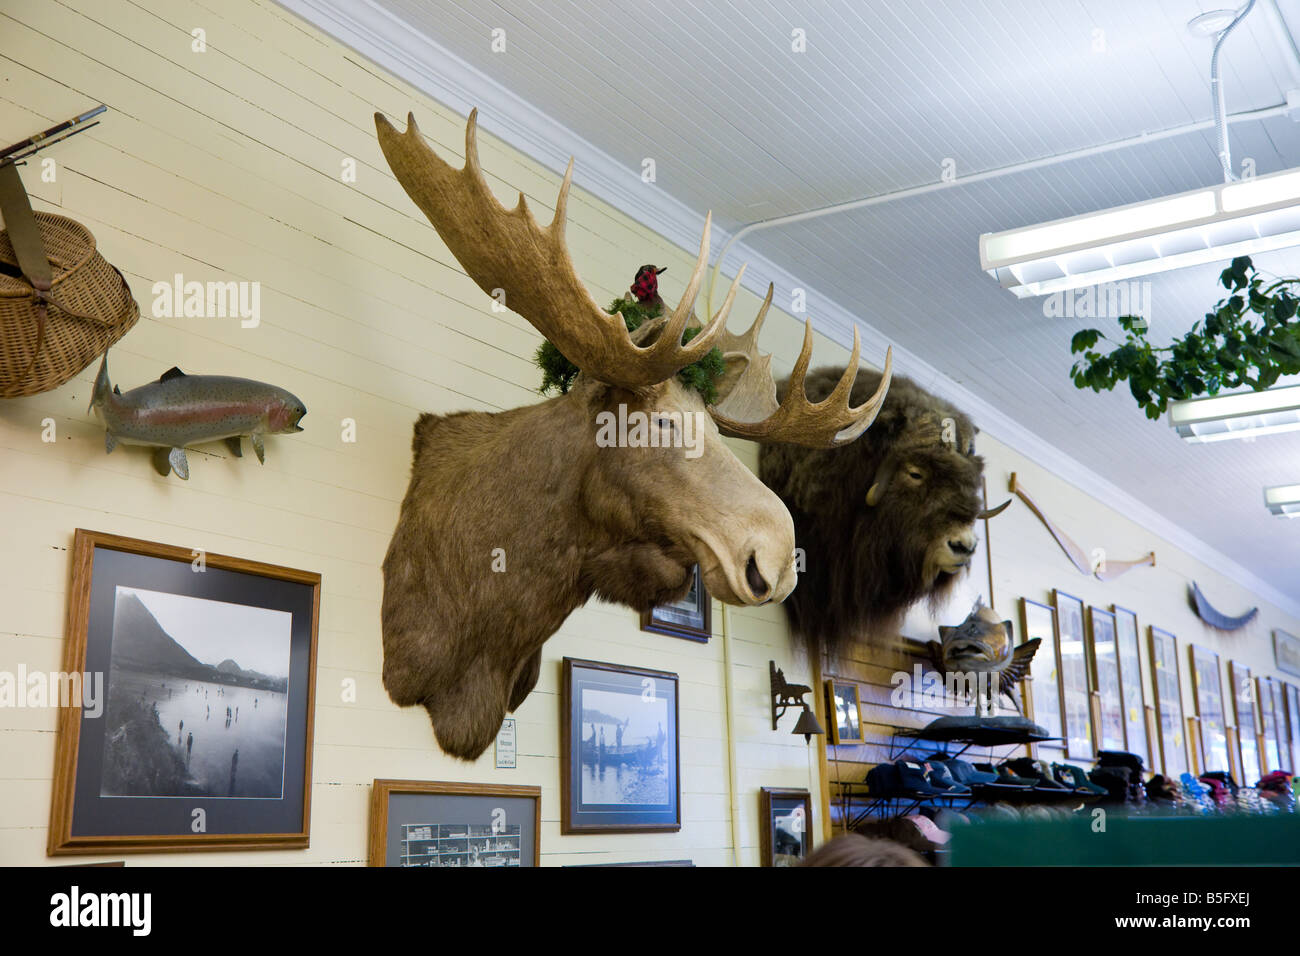 Des têtes d'animaux montage mural au magasin de souvenirs pour touristes à Sitka, Alaska Banque D'Images